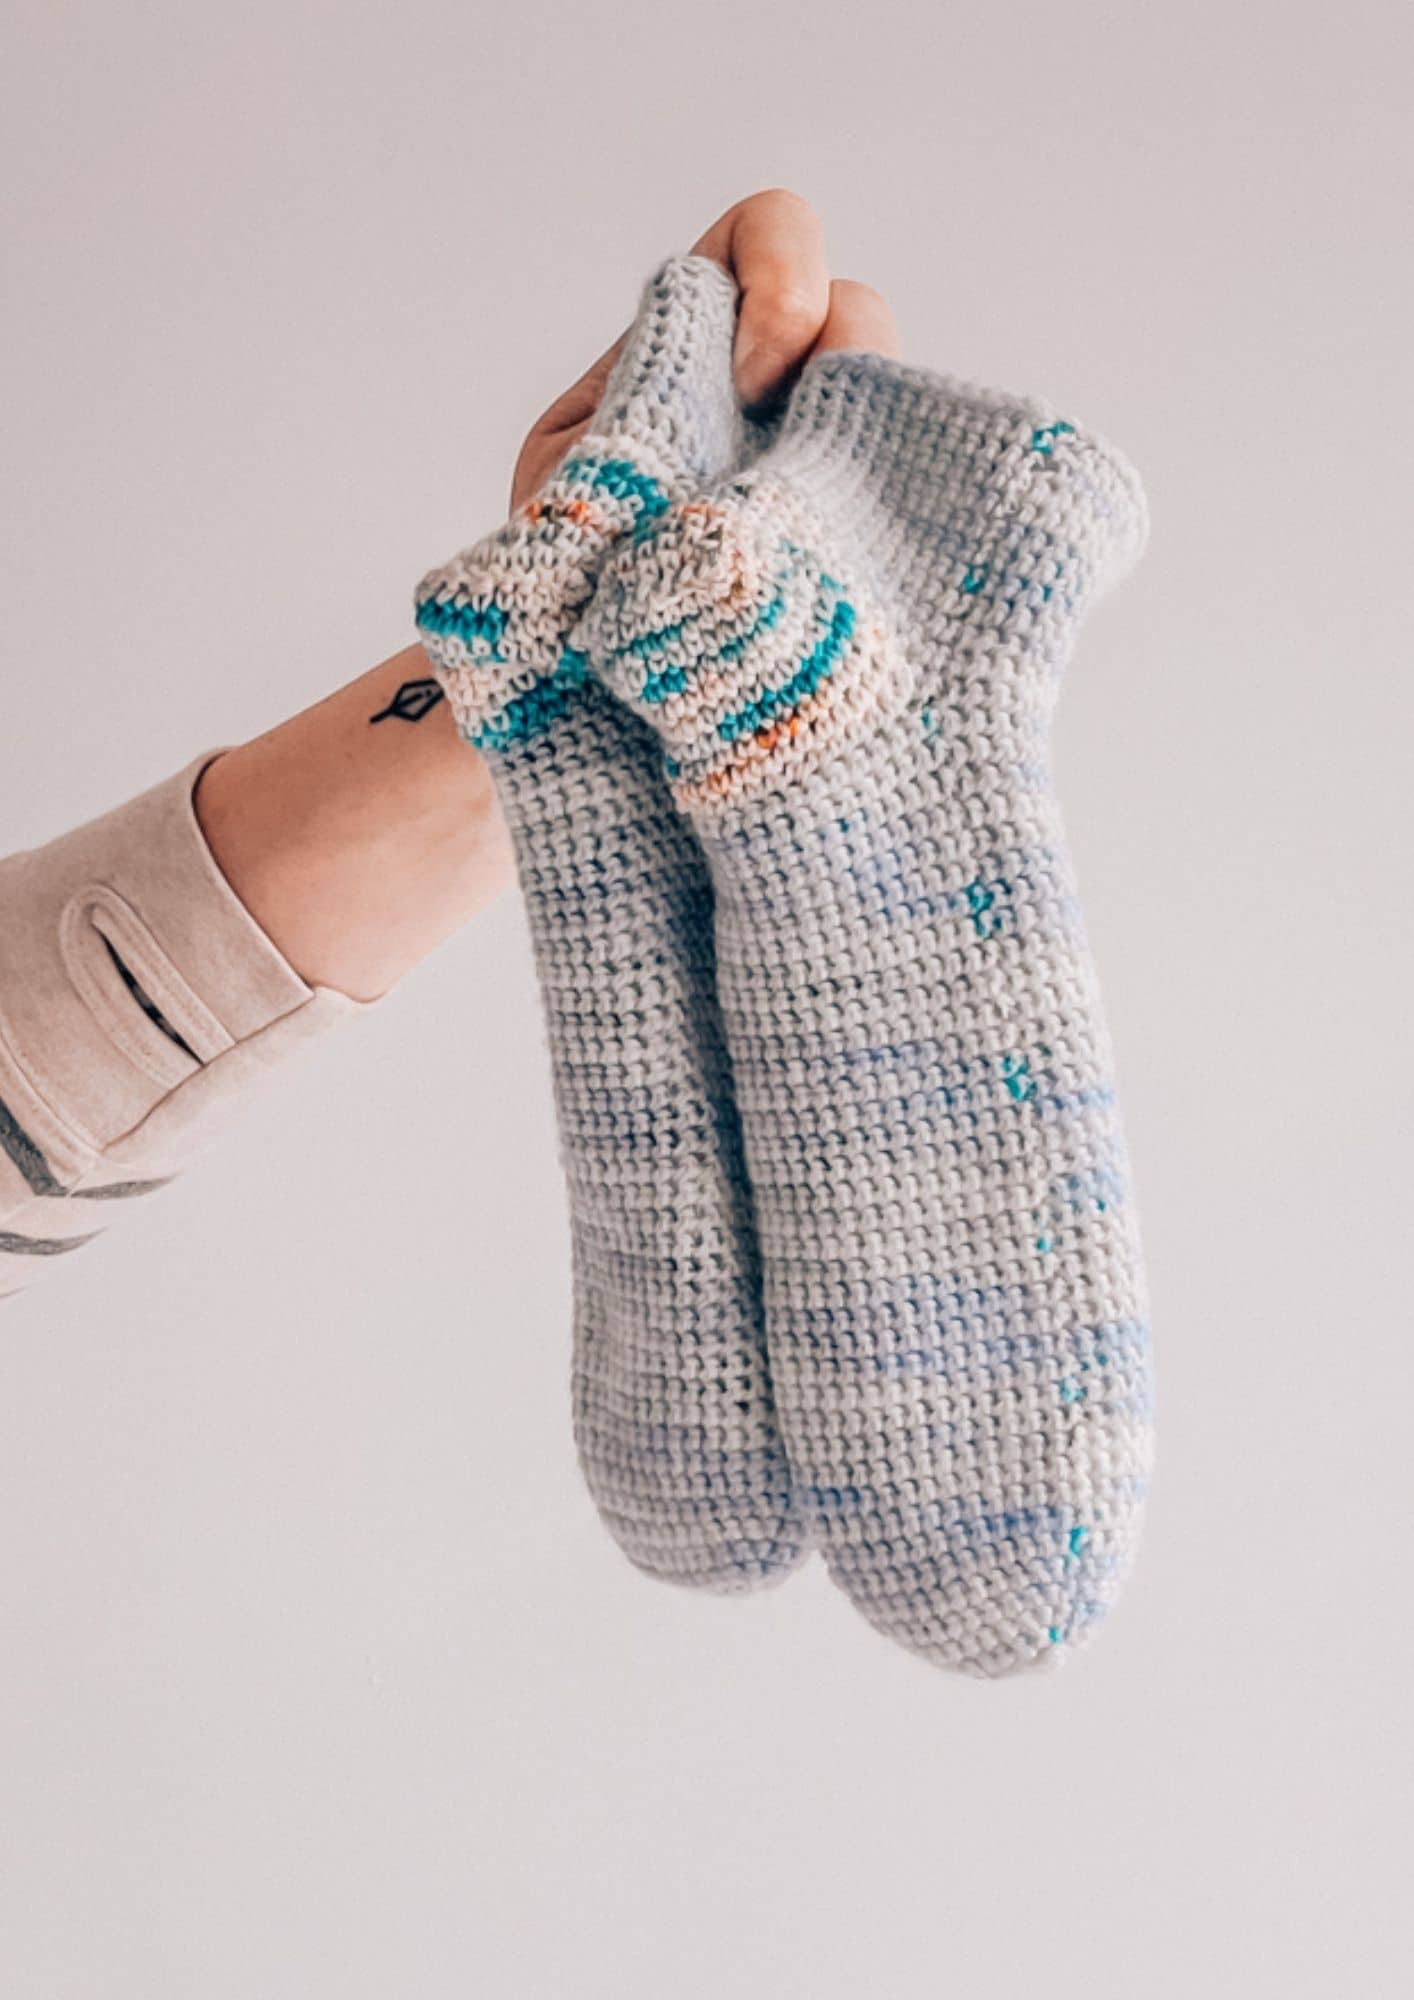 Crochet socks pattern